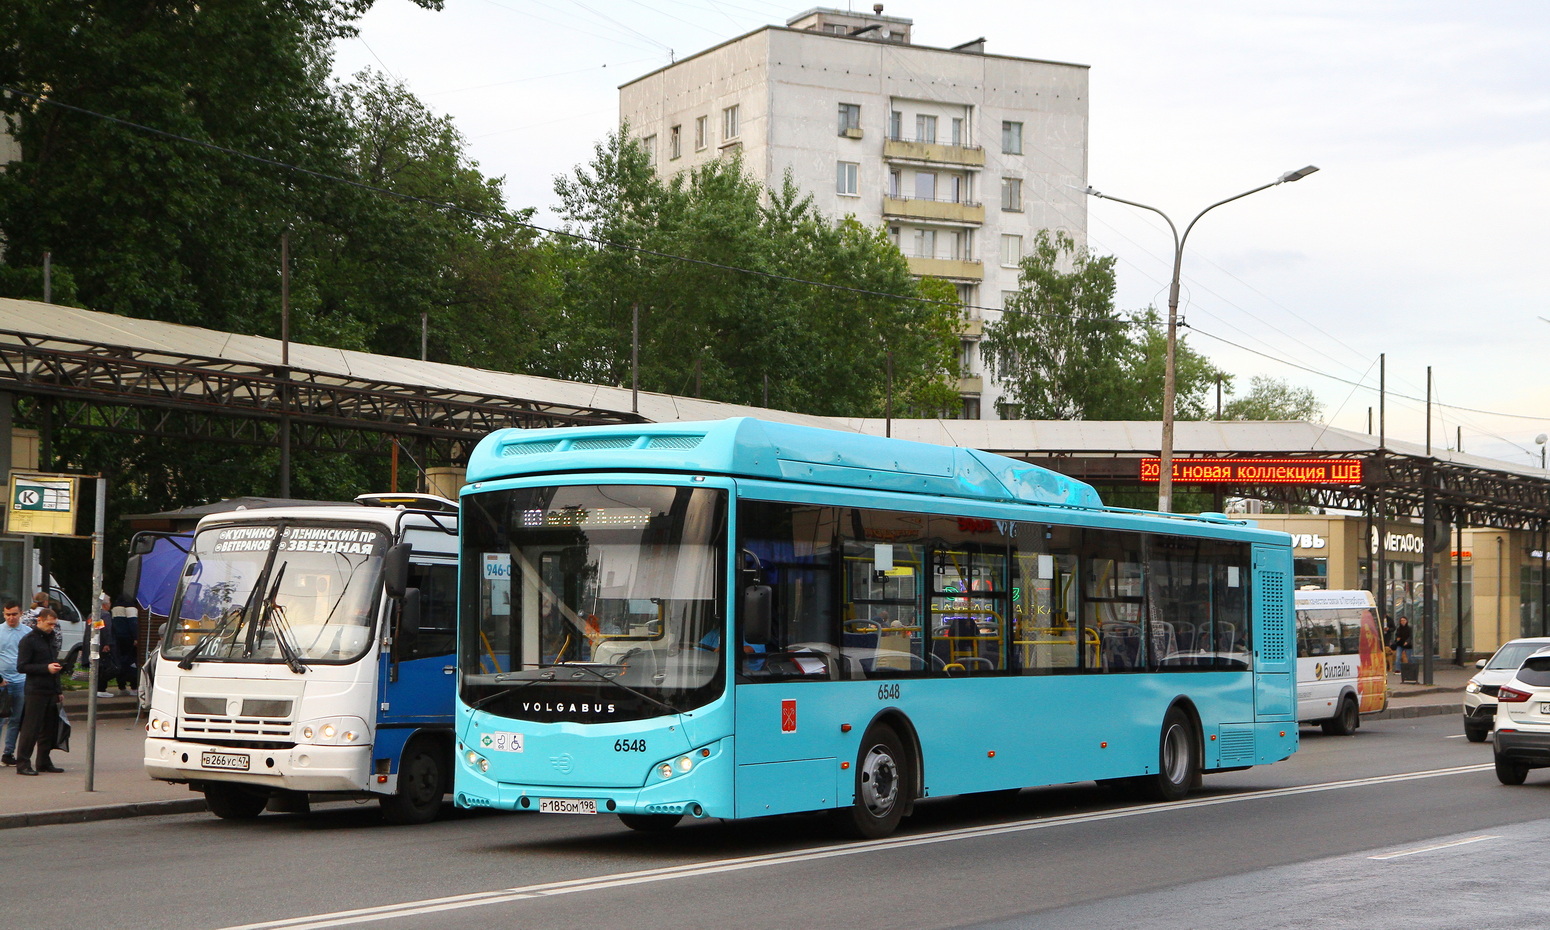 Sankt Petersburg, Volgabus-5270.G4 (CNG) Nr. 6548